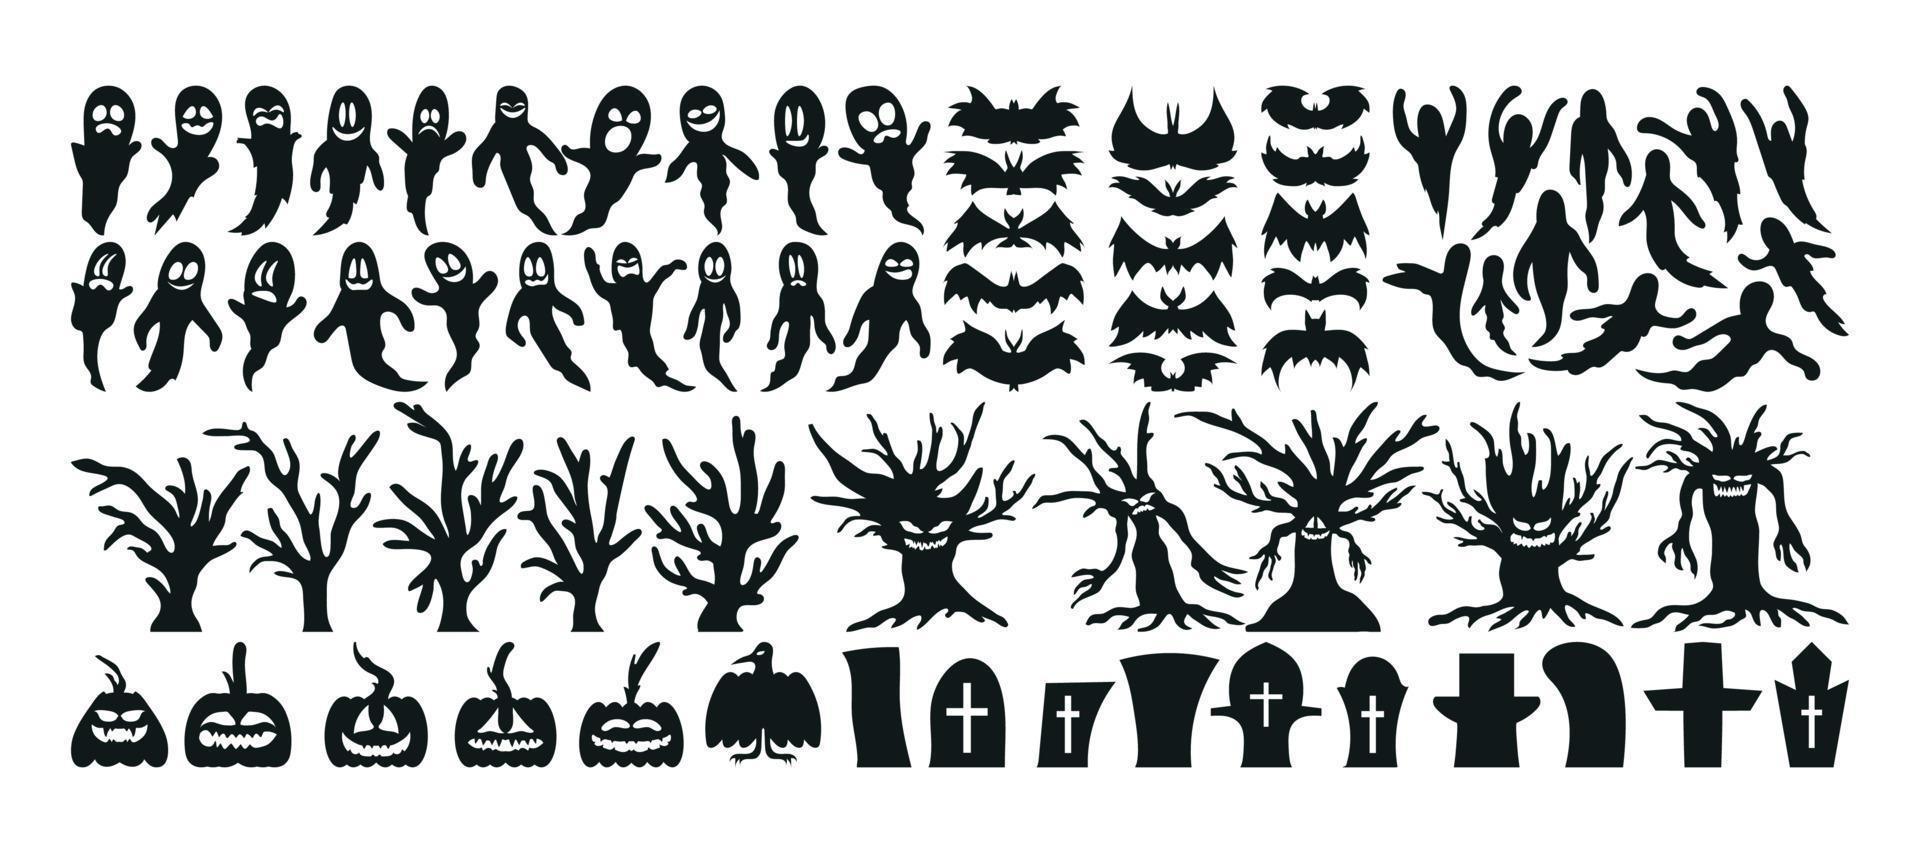 conjunto de icono y carácter de silueta de halloween. ilustración vectorial de halloween aislada sobre fondo blanco vector